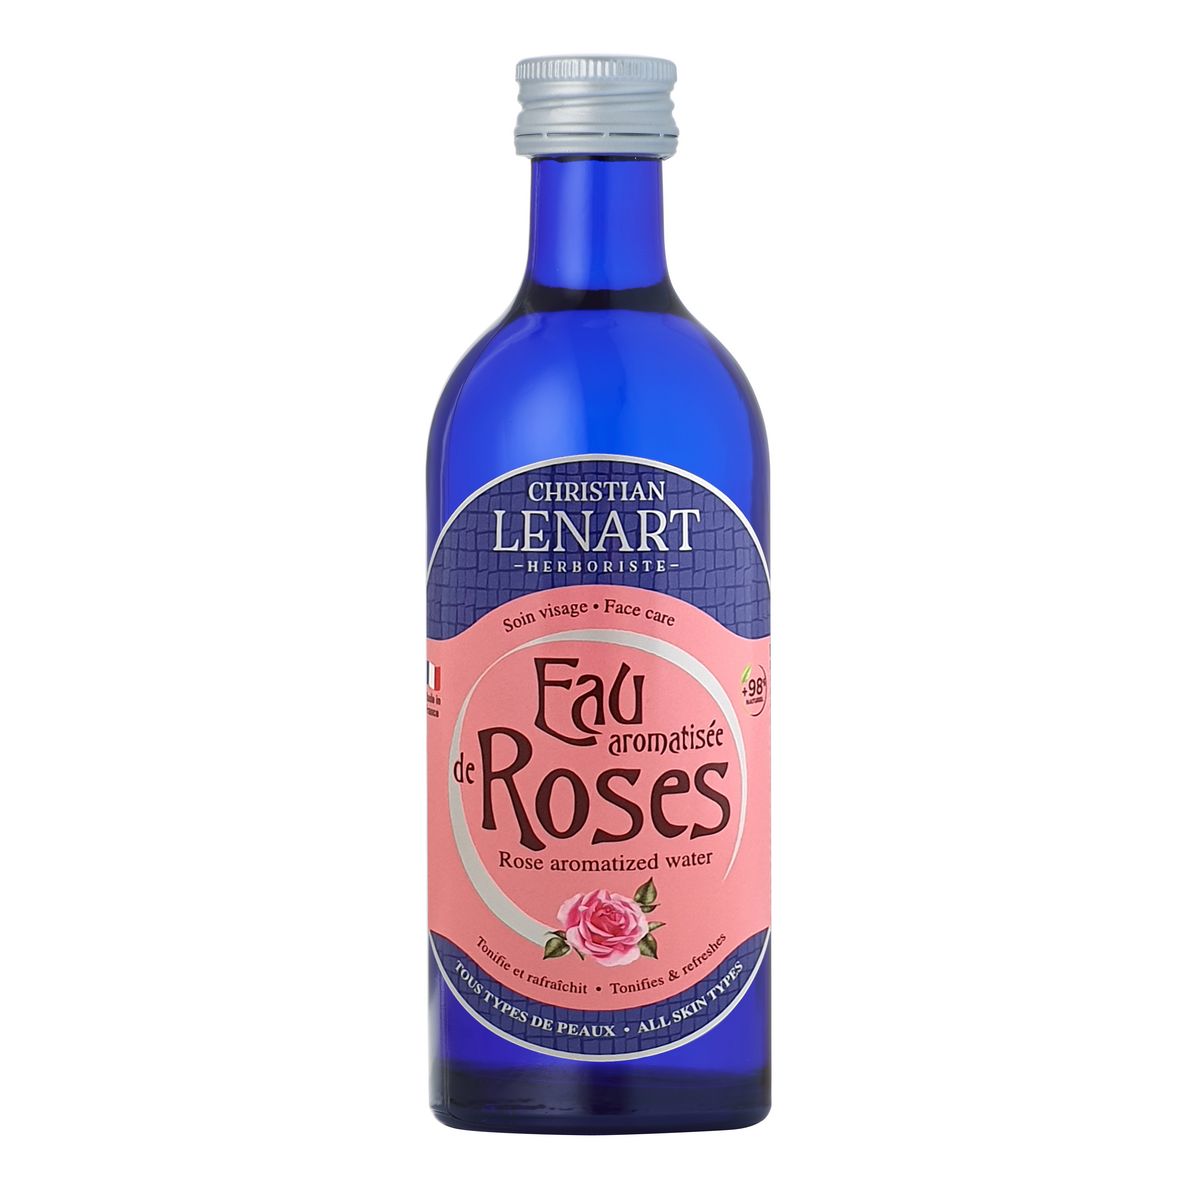 CHRISTIAN LENART Eau florale de rose 200ml